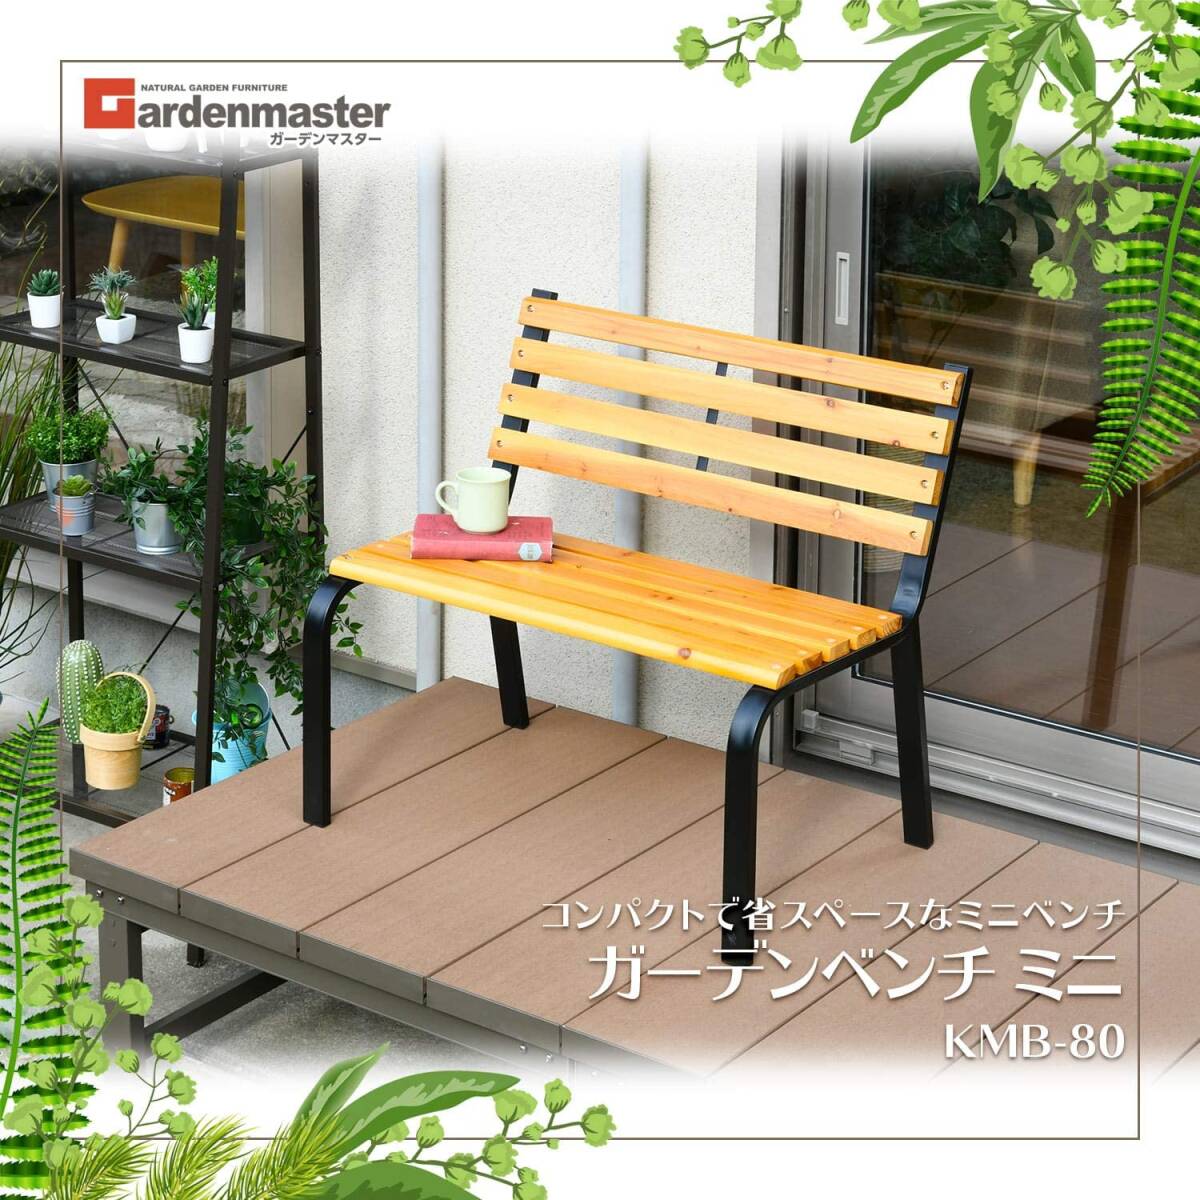 【売れてます】ガーデンベンチ ミニ 幅80cm 天然木製 おしゃれ KMB-80(NA/BK) スチールベンチ パークベンチ ガーデンチェア おしゃれの画像1